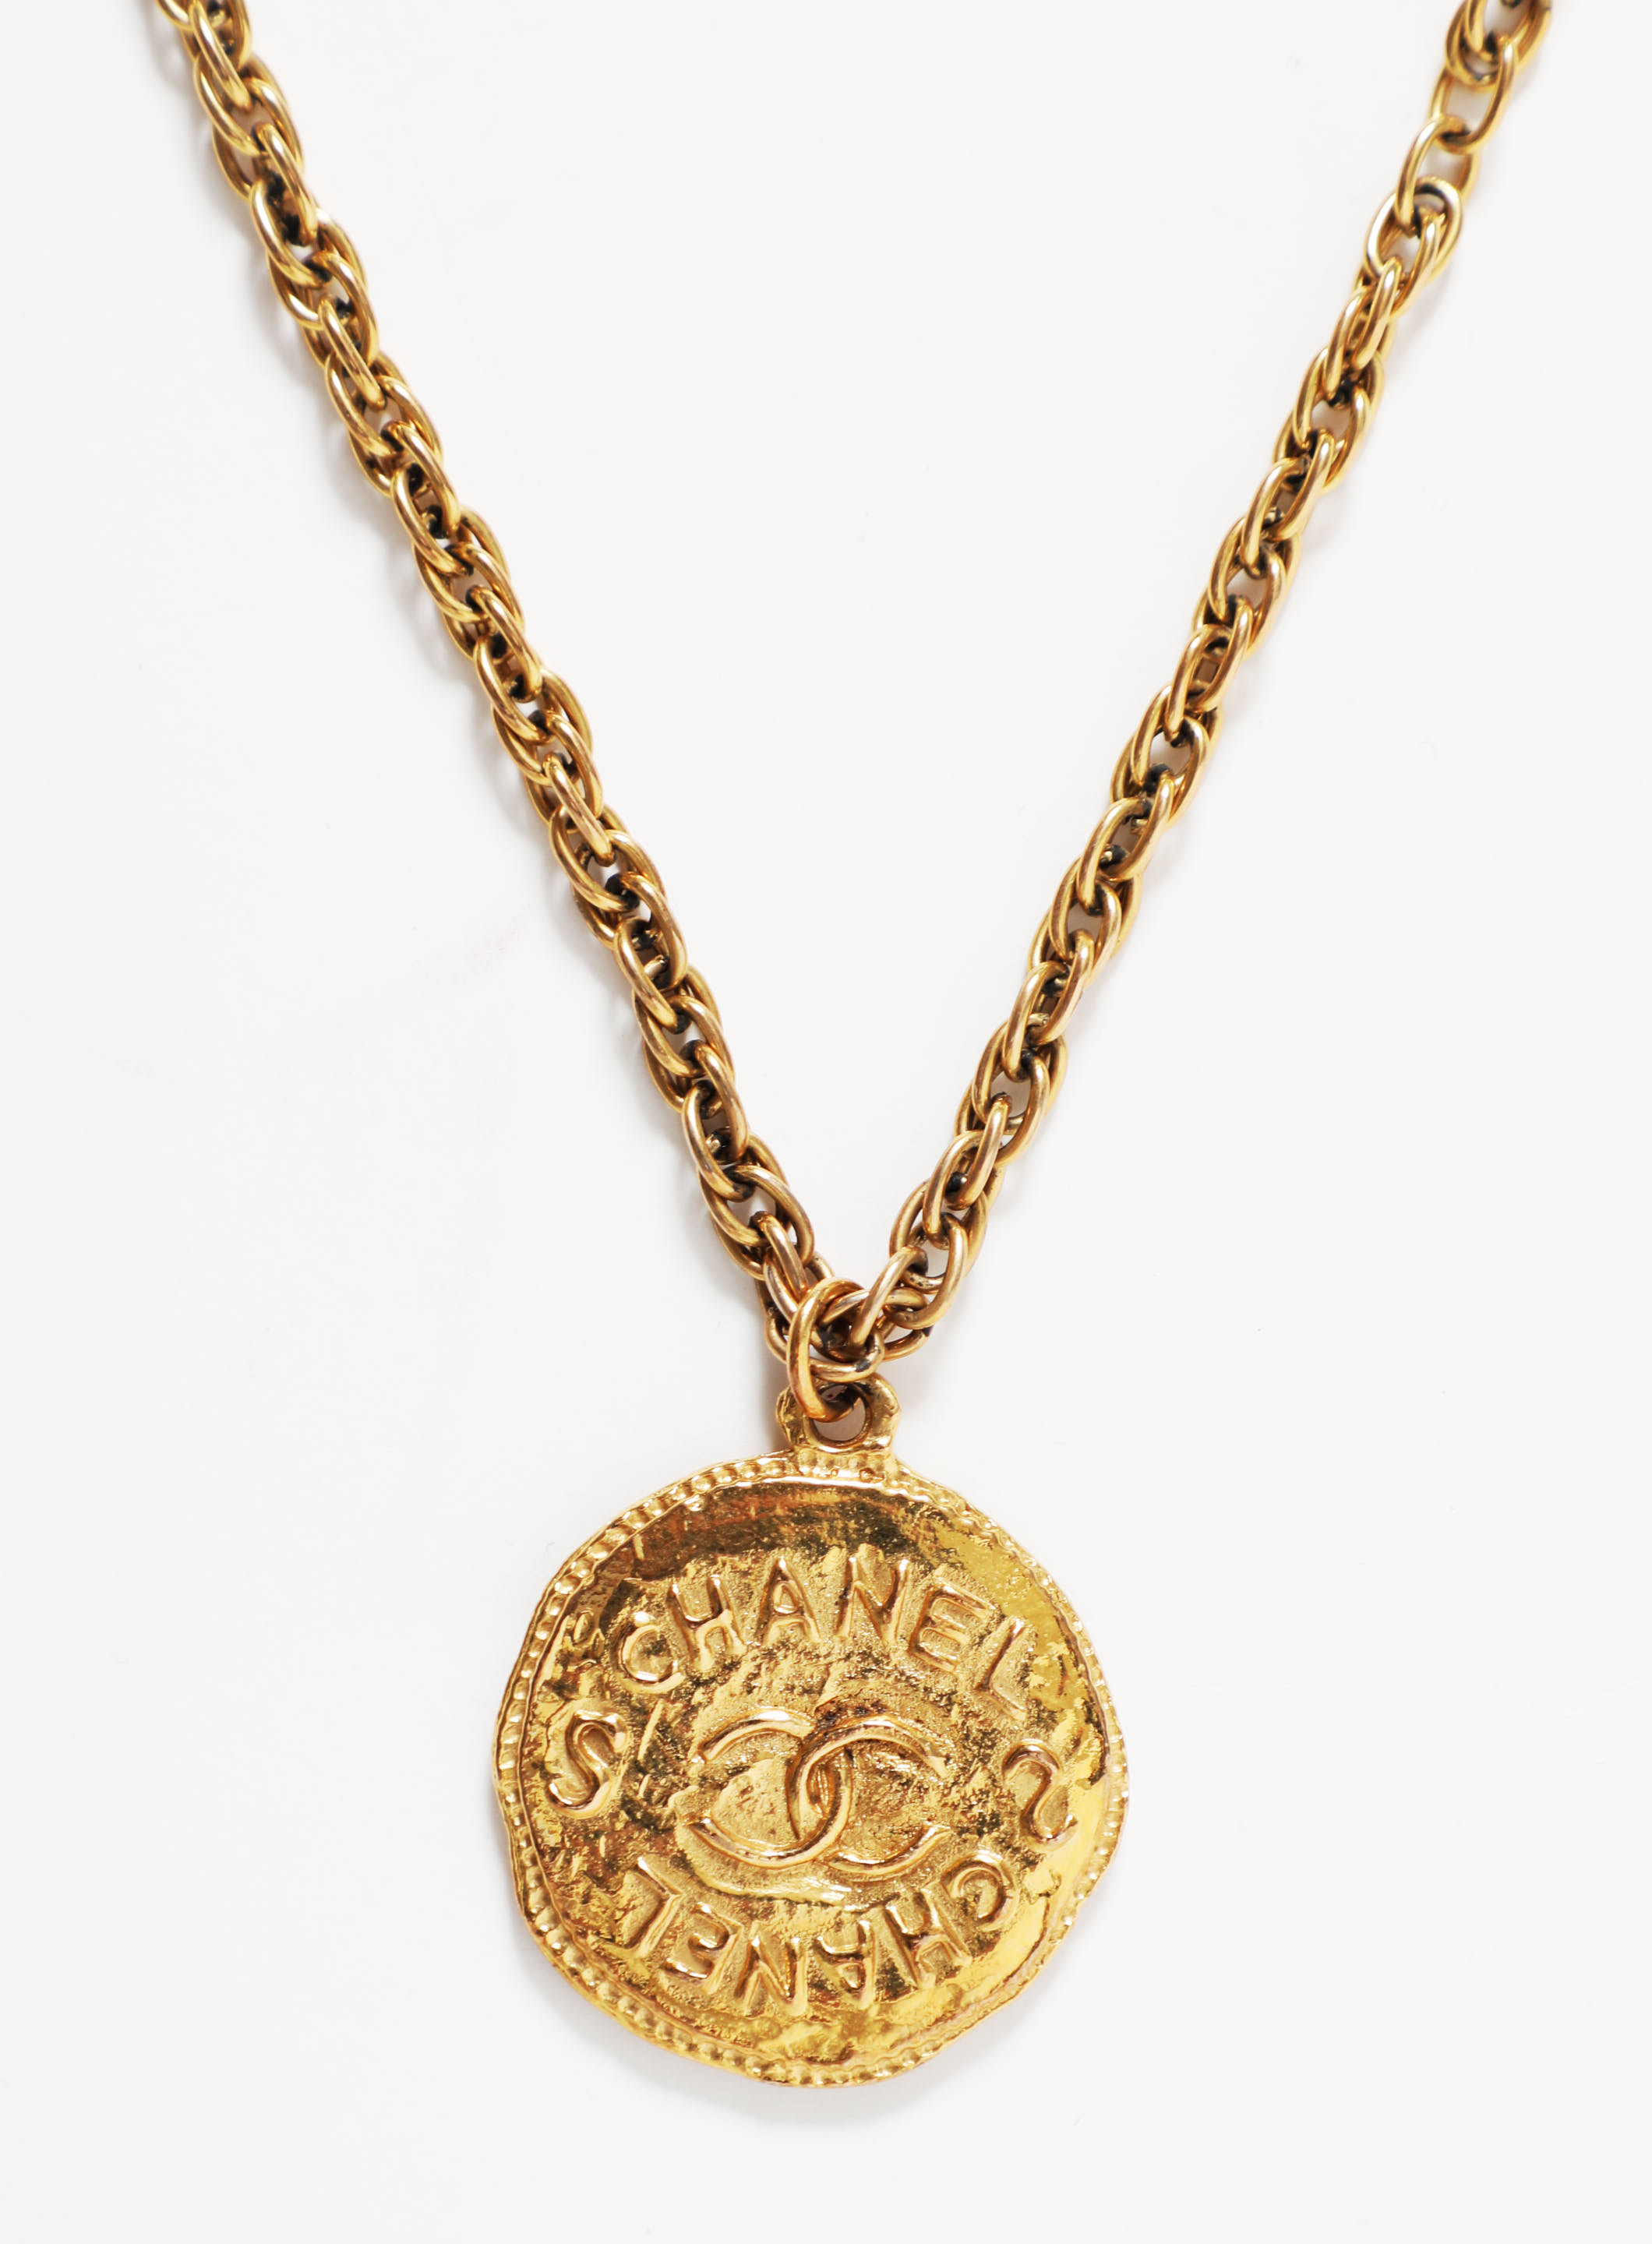 RARE 'CC' Medaillon Necklace, Authentic & Vintage